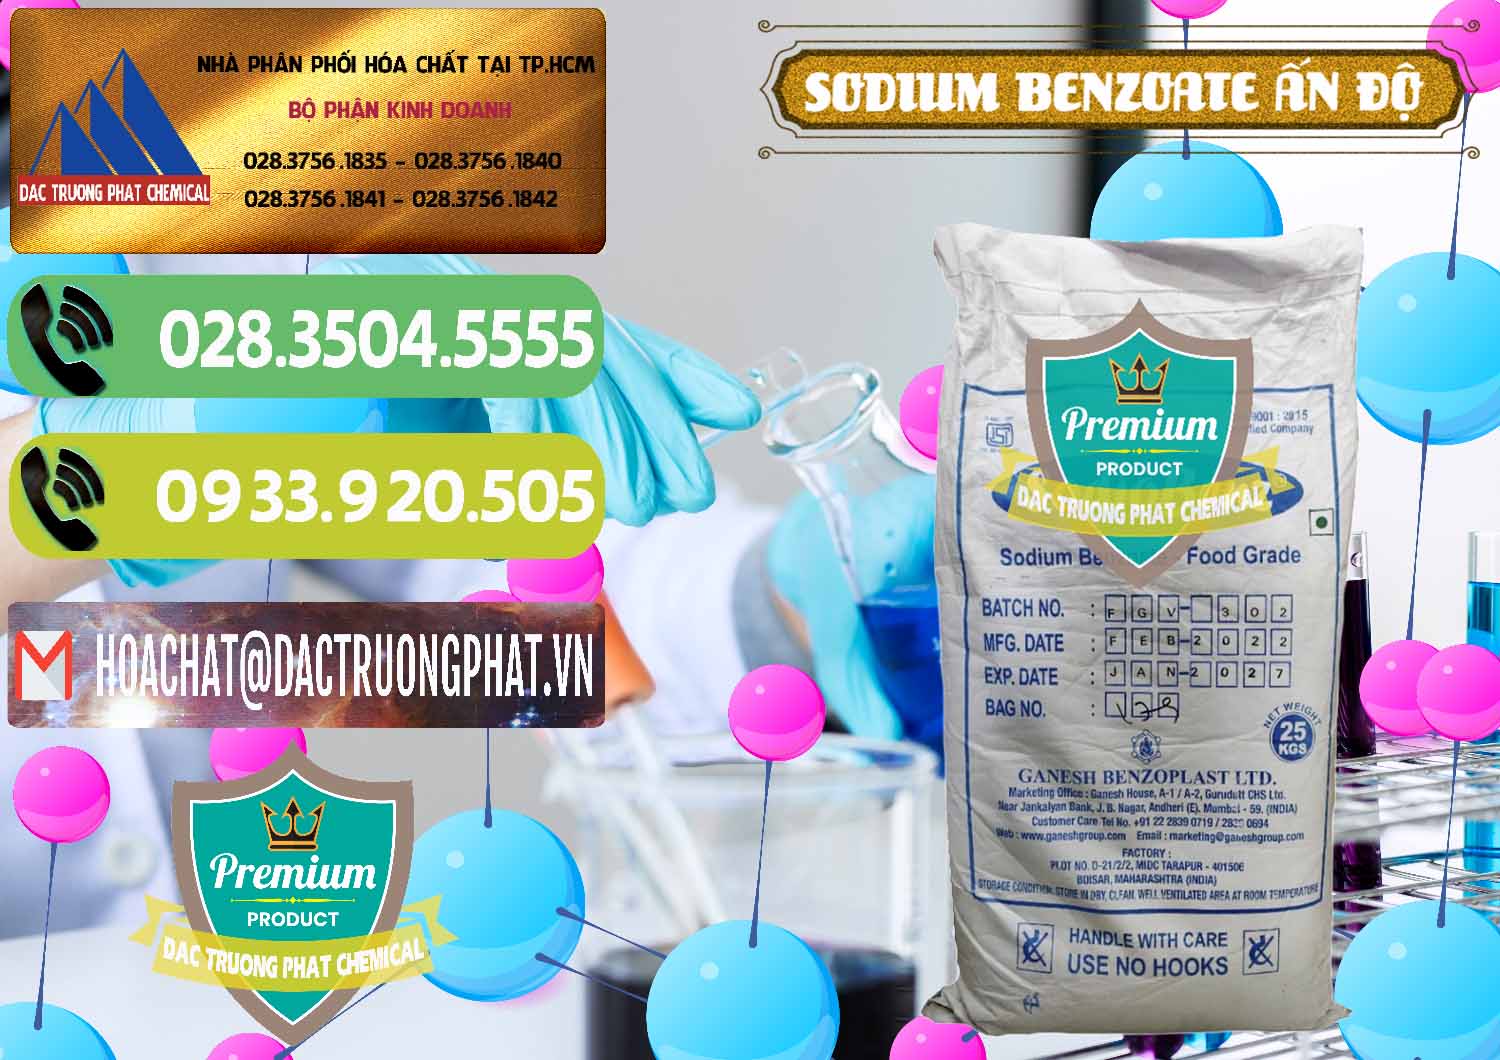 Nơi chuyên bán - cung cấp Sodium Benzoate - Mốc Bột Ấn Độ India - 0361 - Đơn vị chuyên kinh doanh và cung cấp hóa chất tại TP.HCM - hoachatmientay.vn